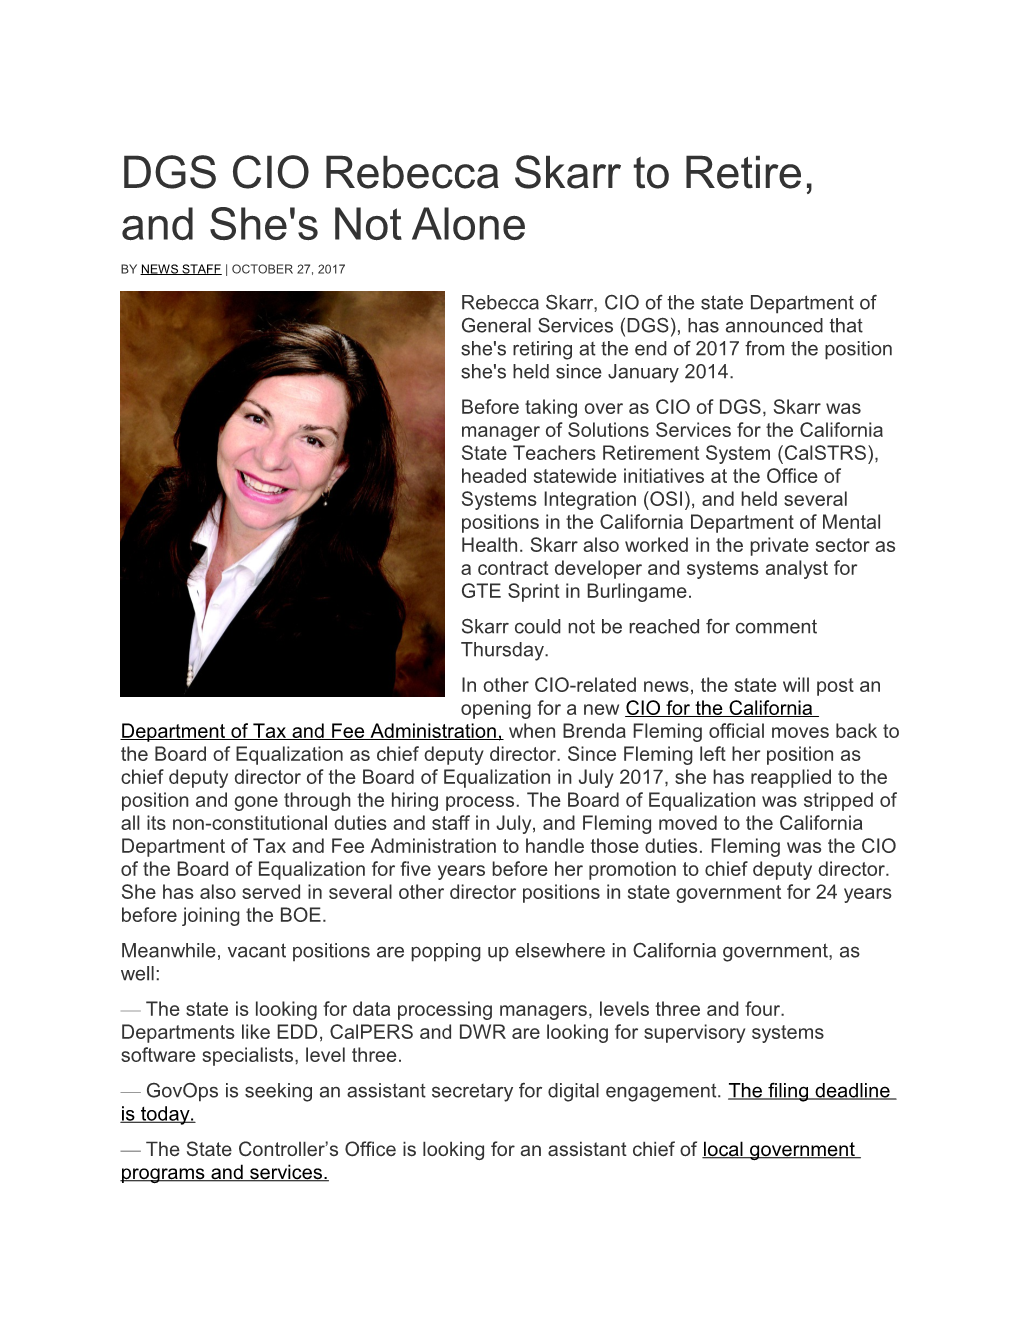 DGS CIO Rebecca Skarr to Retire, and She's Not Alone